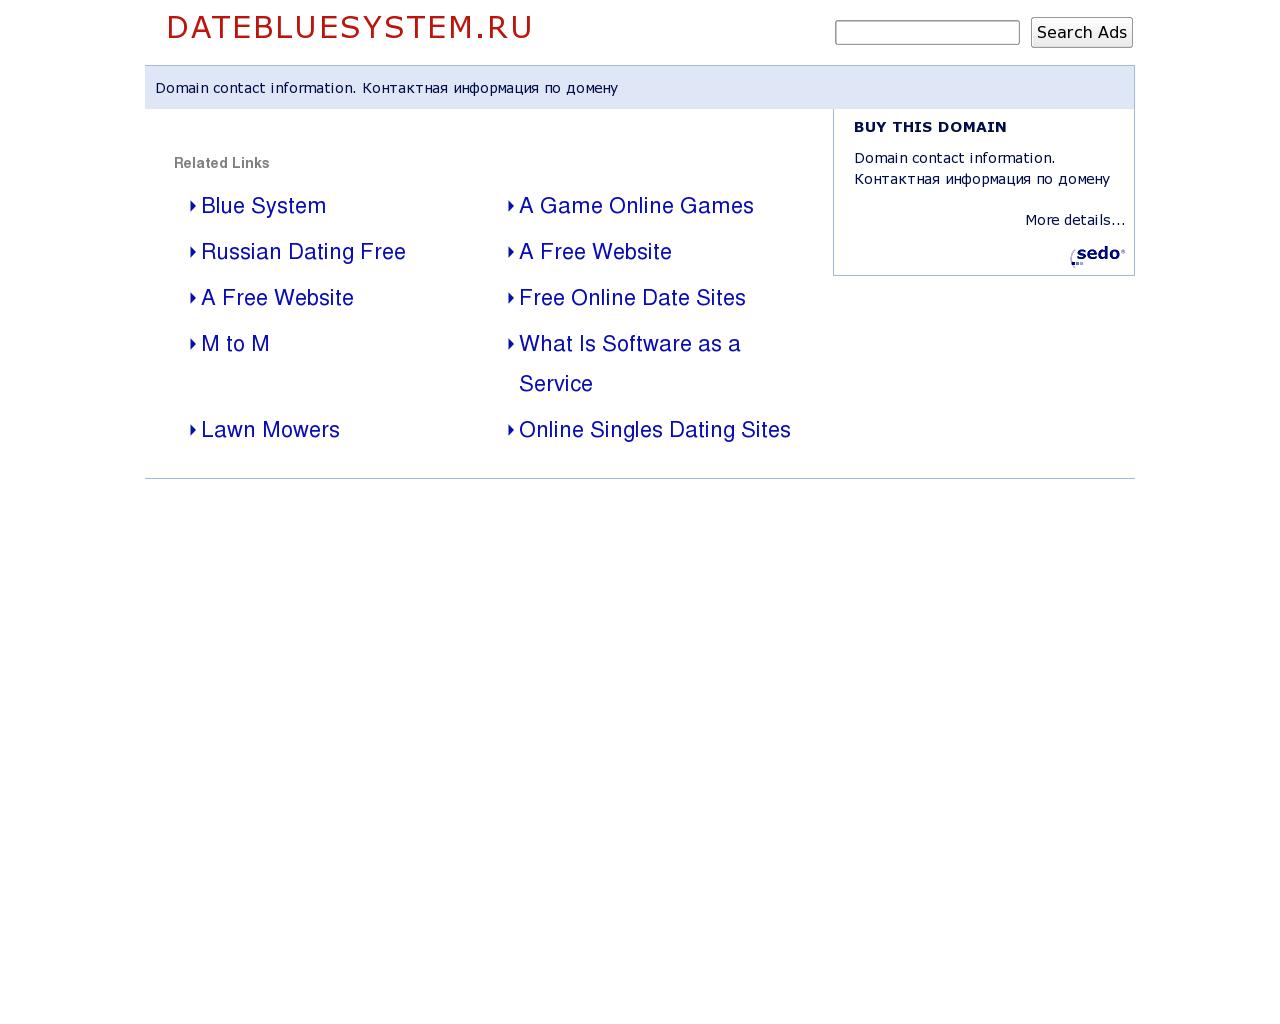 Изображение сайта datebluesystem.ru в разрешении 1280x1024